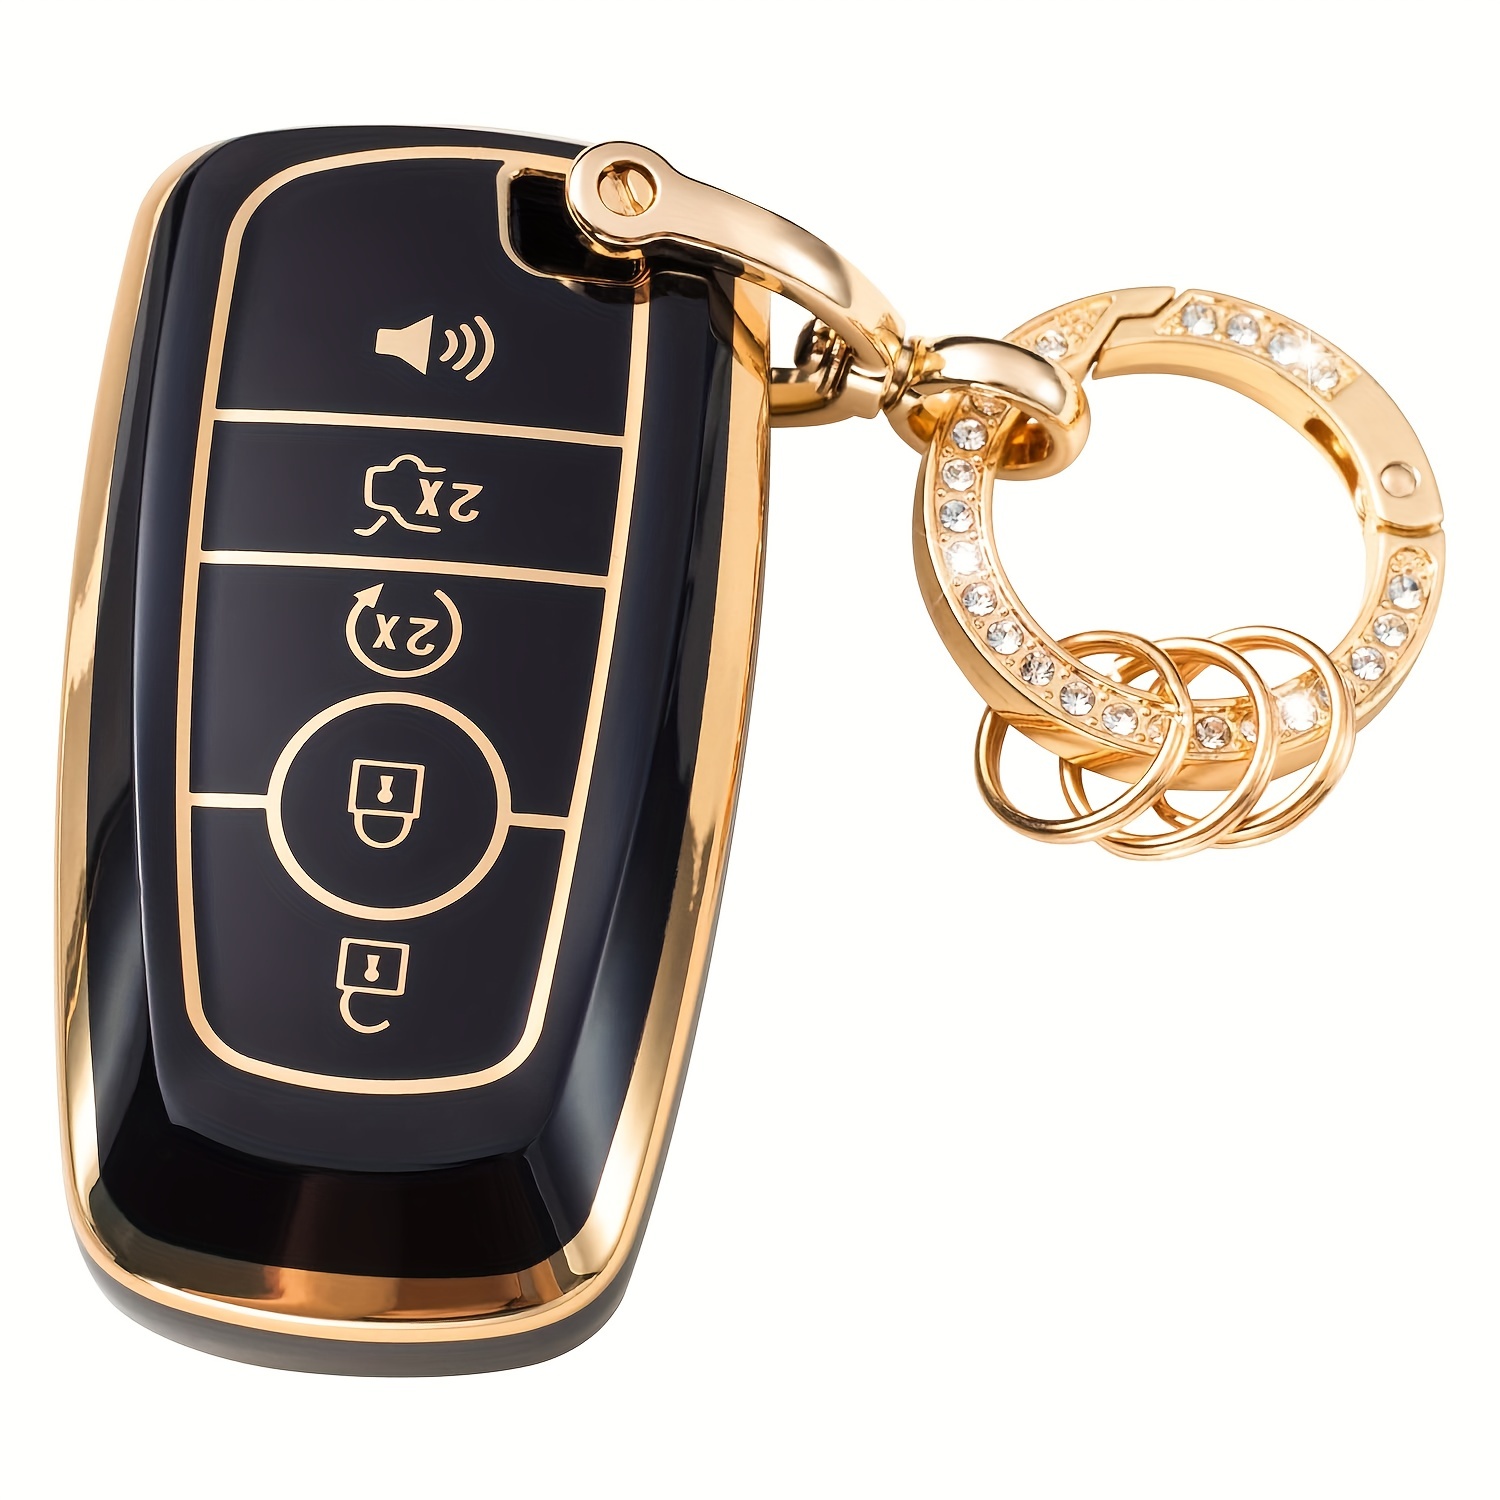 Autoschlüssel Neue TPU Klappschlüsselhülle Tasche Shell Case  Schlüsselanhänger Schutz Für Ford Focus 2 MK2 Fiesta Mondeo Galaxy Falcon  Territory Ecosport T221110 Von 5,6 €